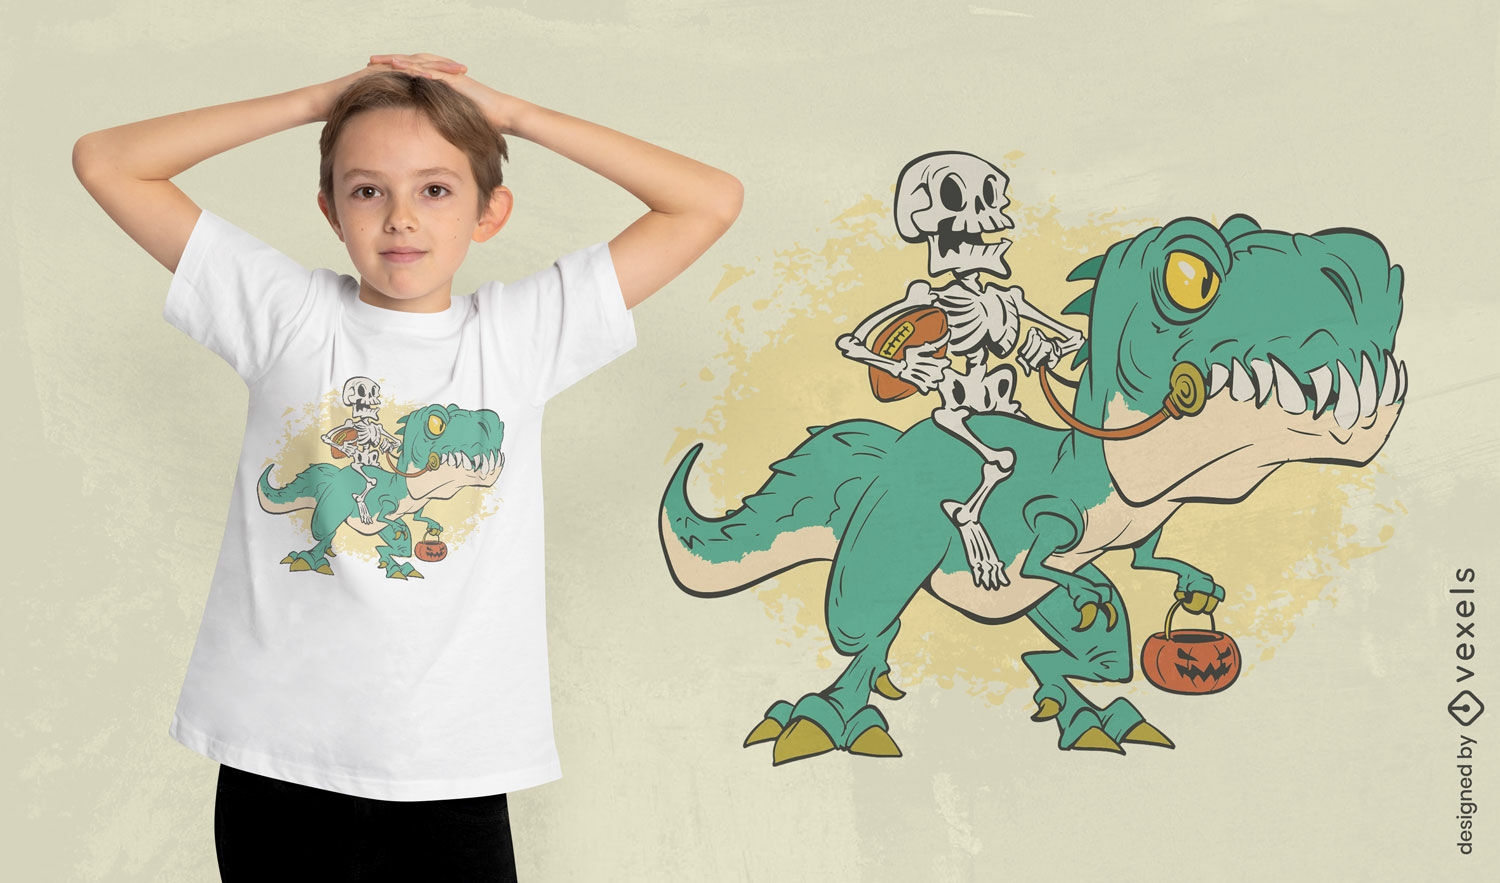 Skeleton riding dino t-shirt design